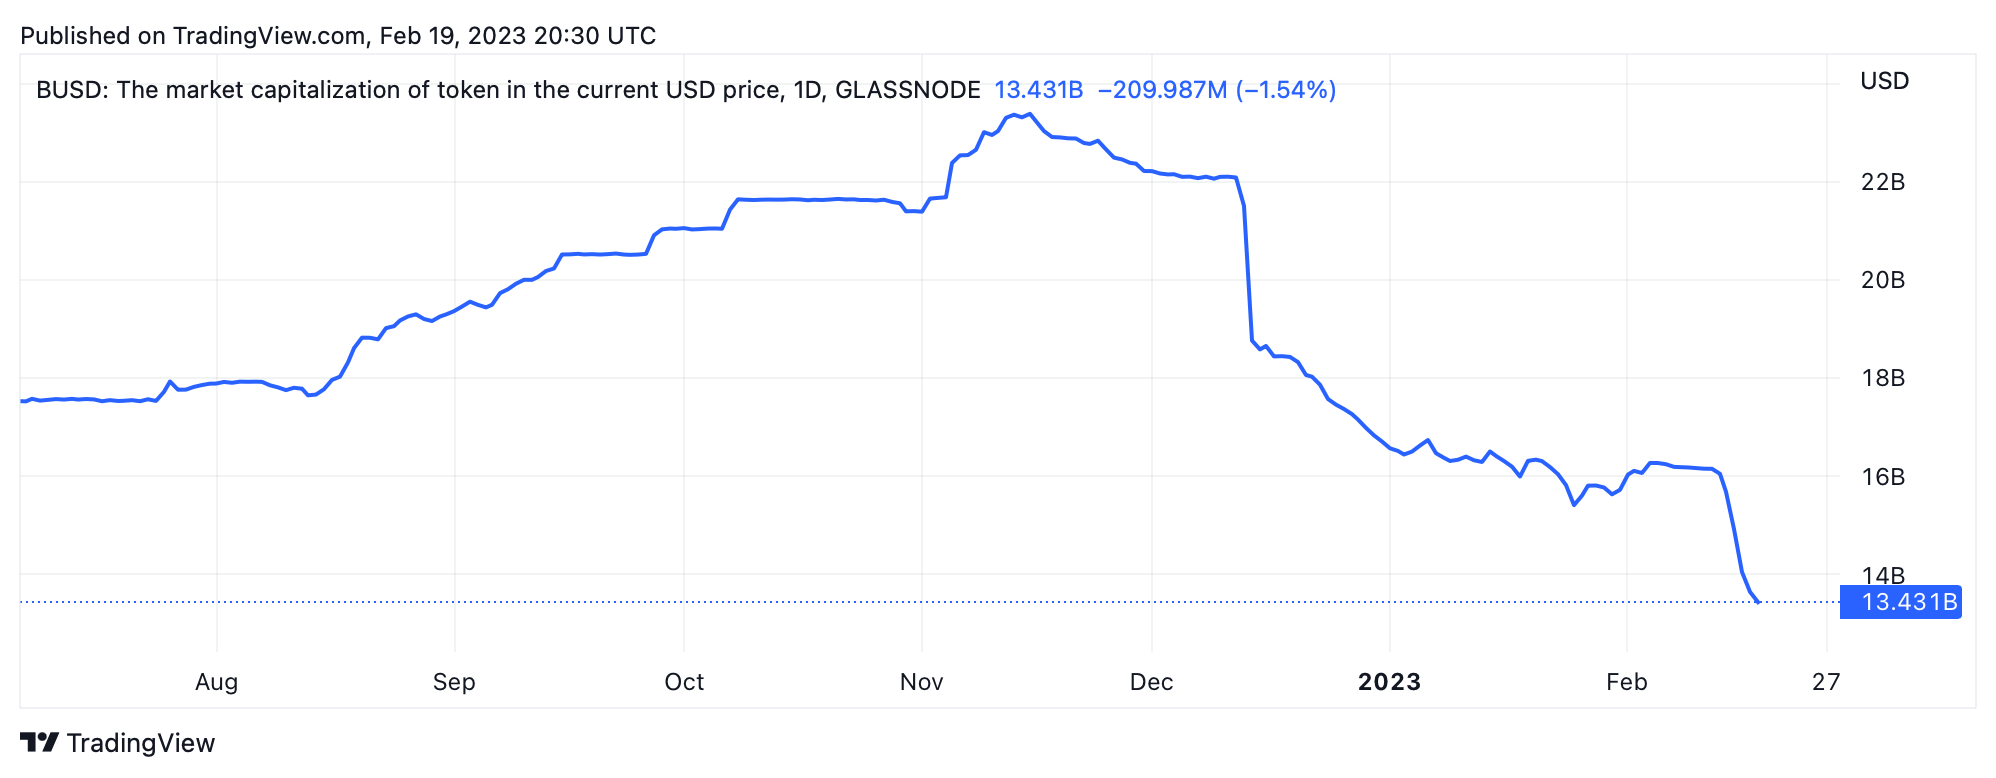 نزدیک به 3 میلیارد دلار استیبل کوین در 6 روز از بازار حذف شده است